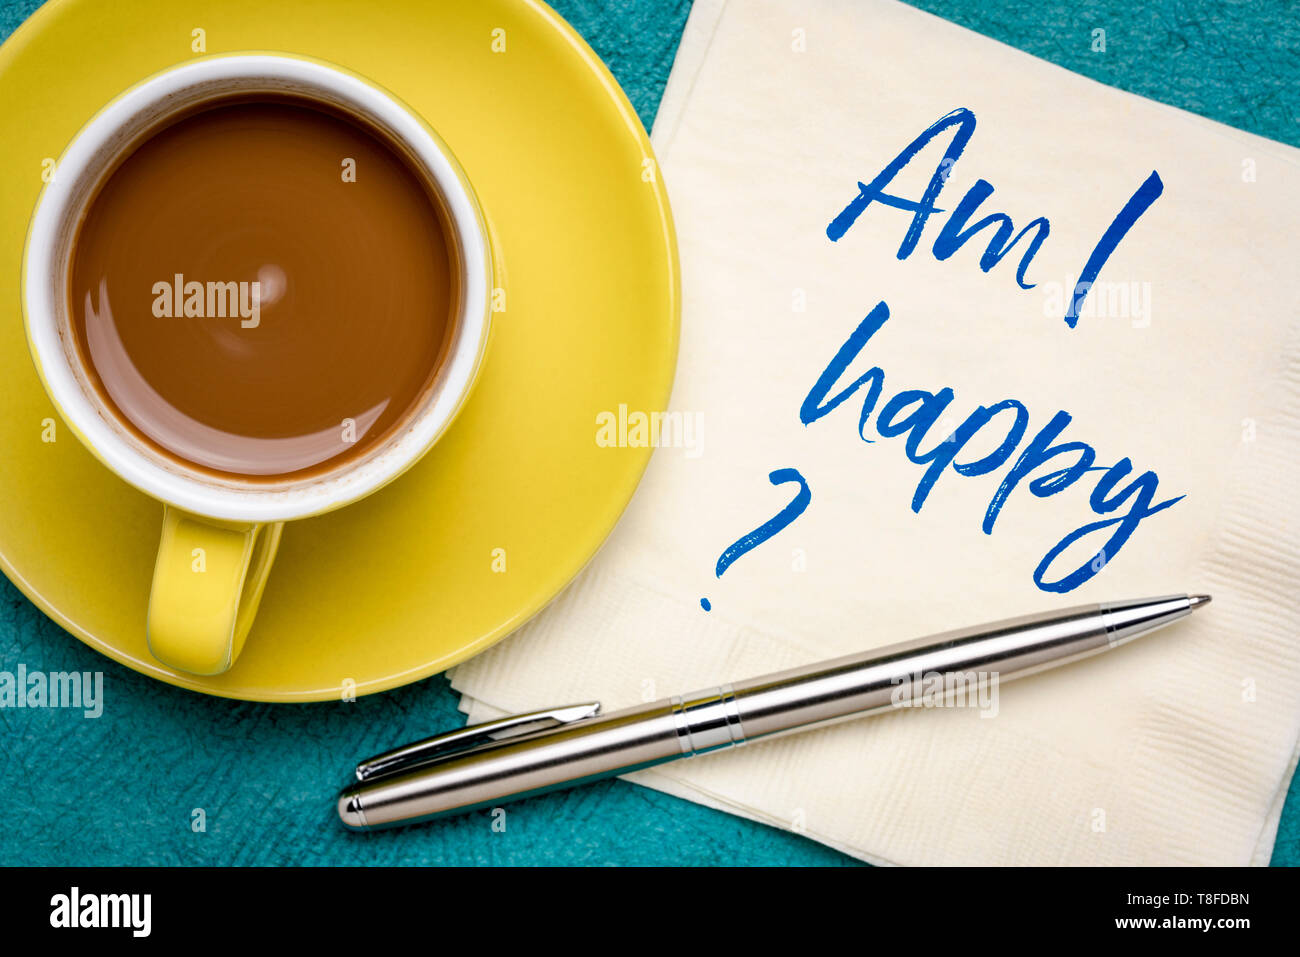 Bin ich glücklich? Handschrift auf eine Serviette mit einer Tasse Kaffee. Stockfoto